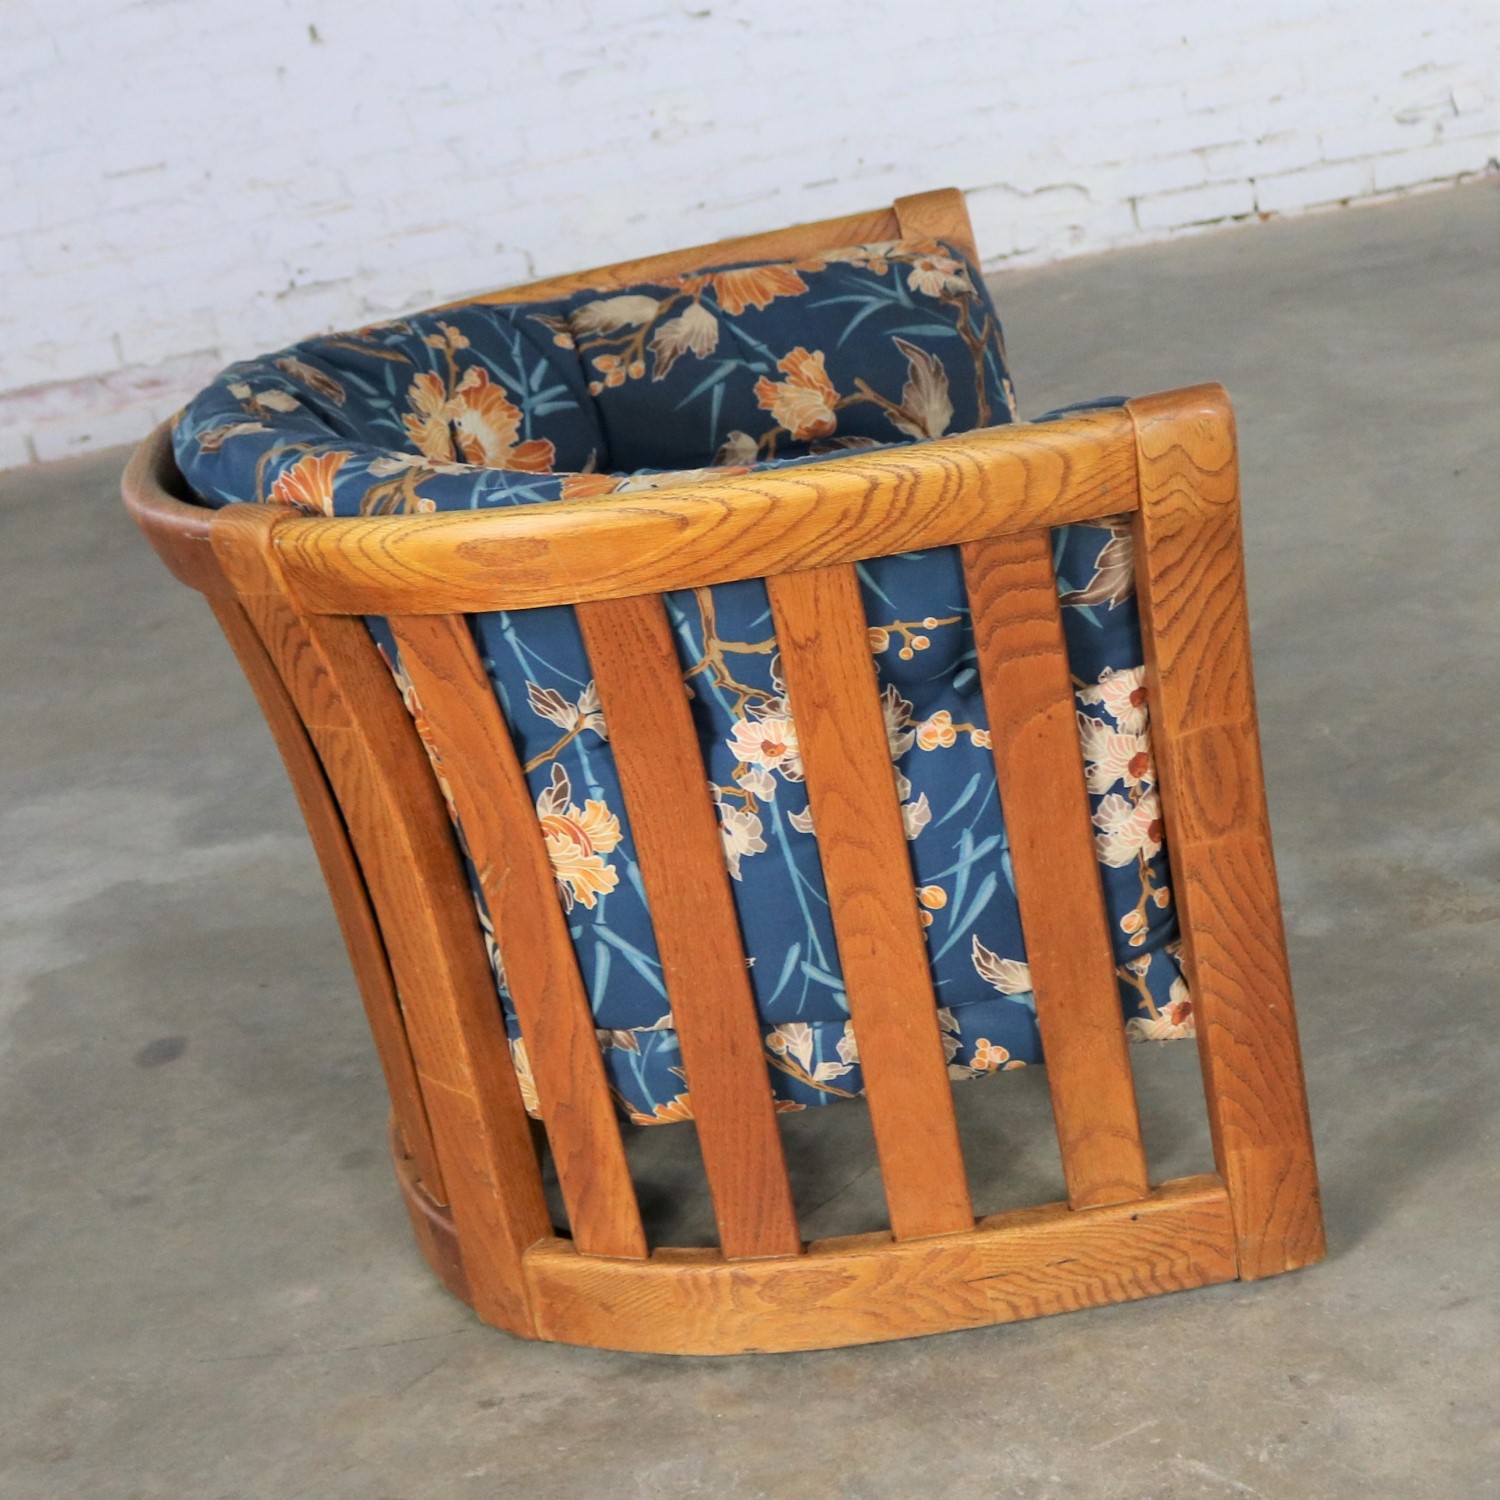 Oak Slatted Back Upholstered Barrel Lounge Chair 1970s